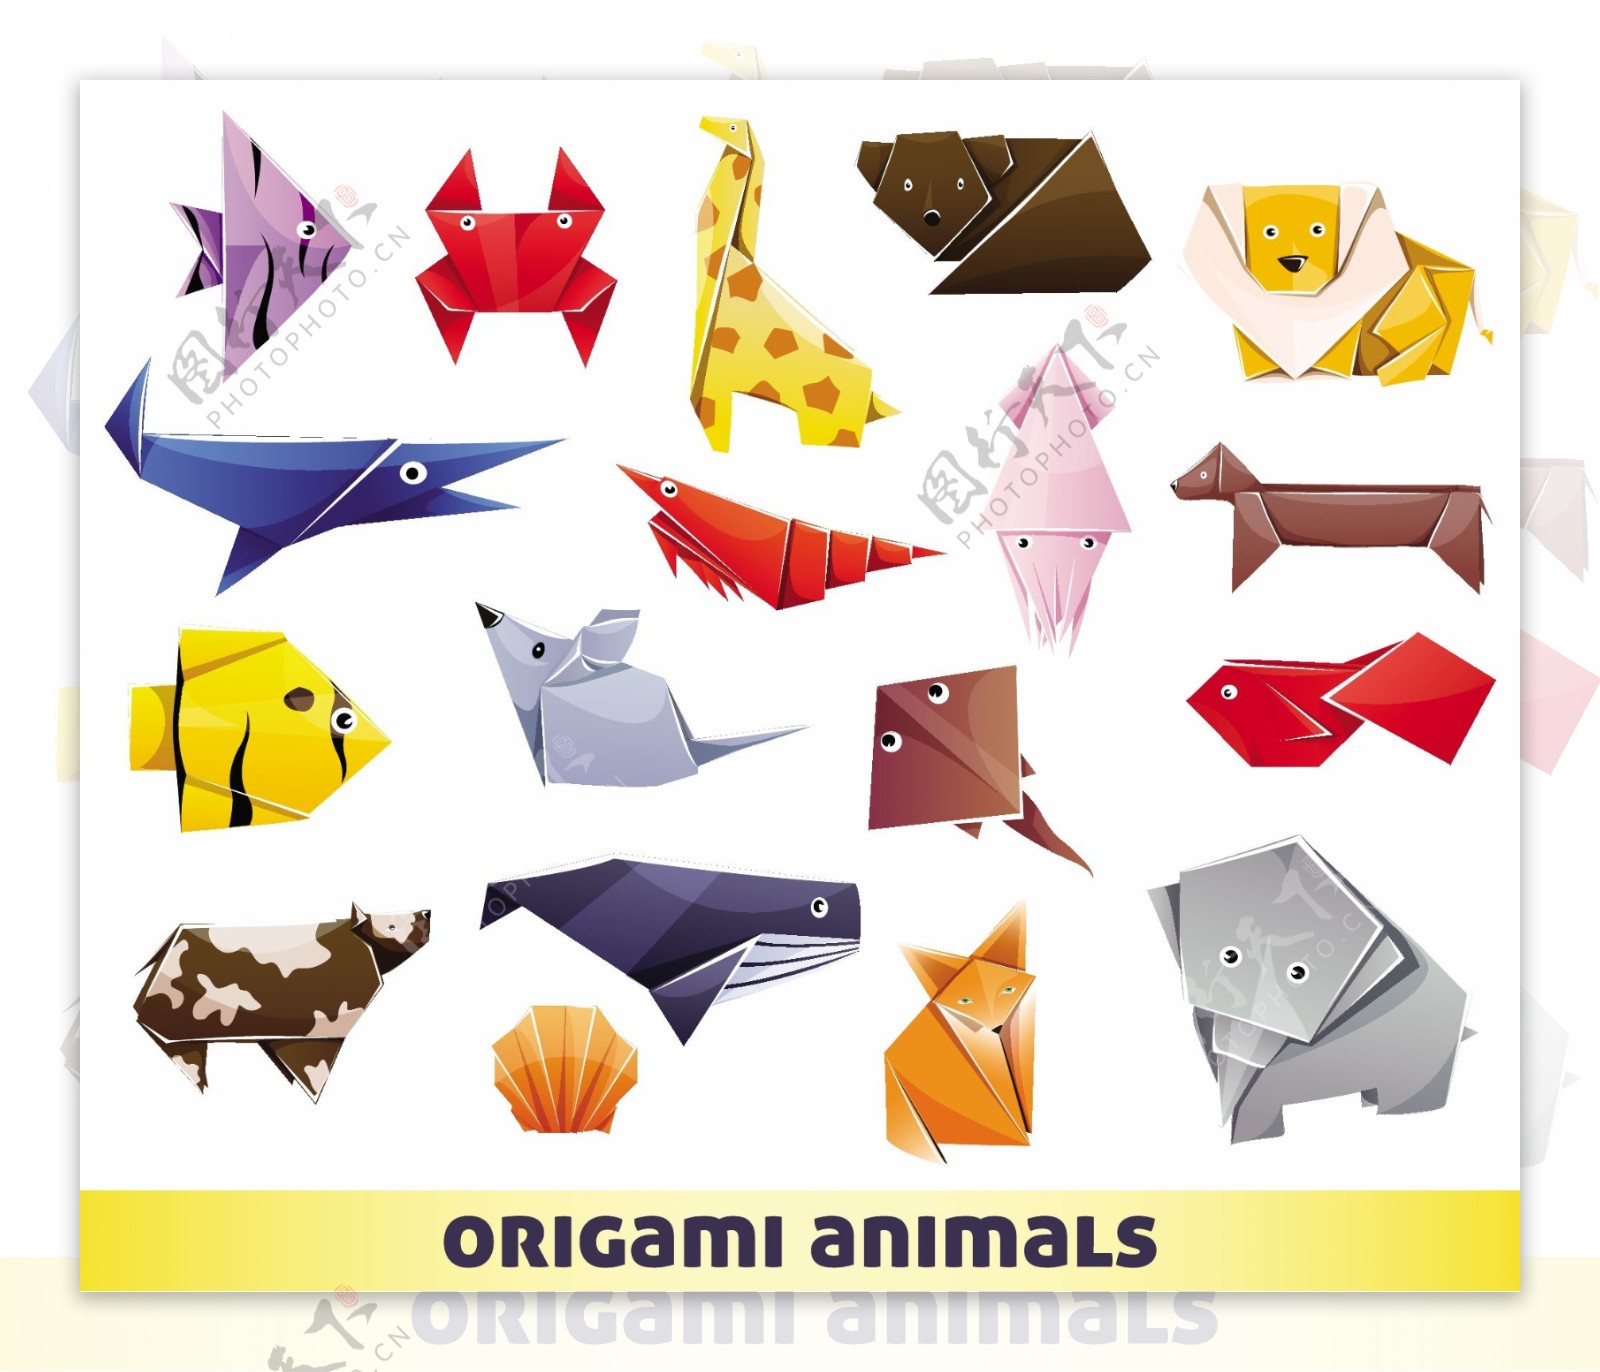 彩色折纸动物设计矢量素材